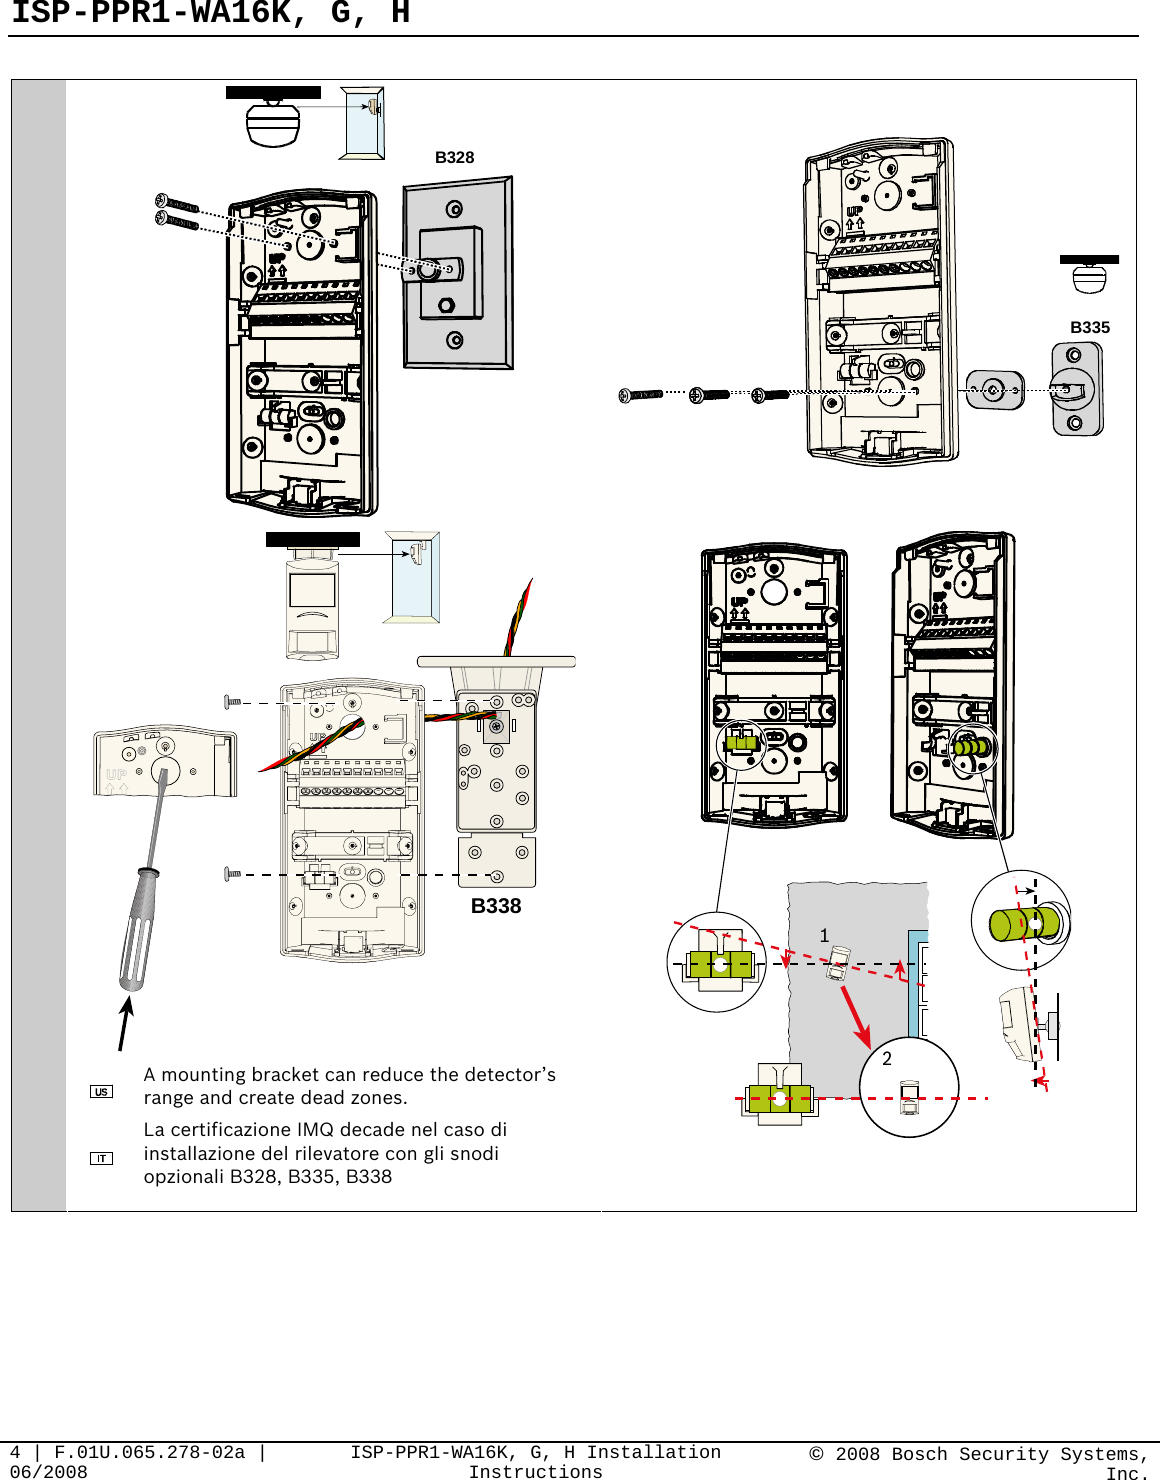 ISP-PPR1-WA16K, G, H   4 | F.01U.065.278-02a | 06/2008  ISP-PPR1-WA16K, G, H Installation Instructions  © 2008 Bosch Security Systems, Inc. B328 B335  B338  A mounting bracket can reduce the detector’s range and create dead zones.  La certificazione IMQ decade nel caso di installazione del rilevatore con gli snodi opzionali B328, B335, B338  21  